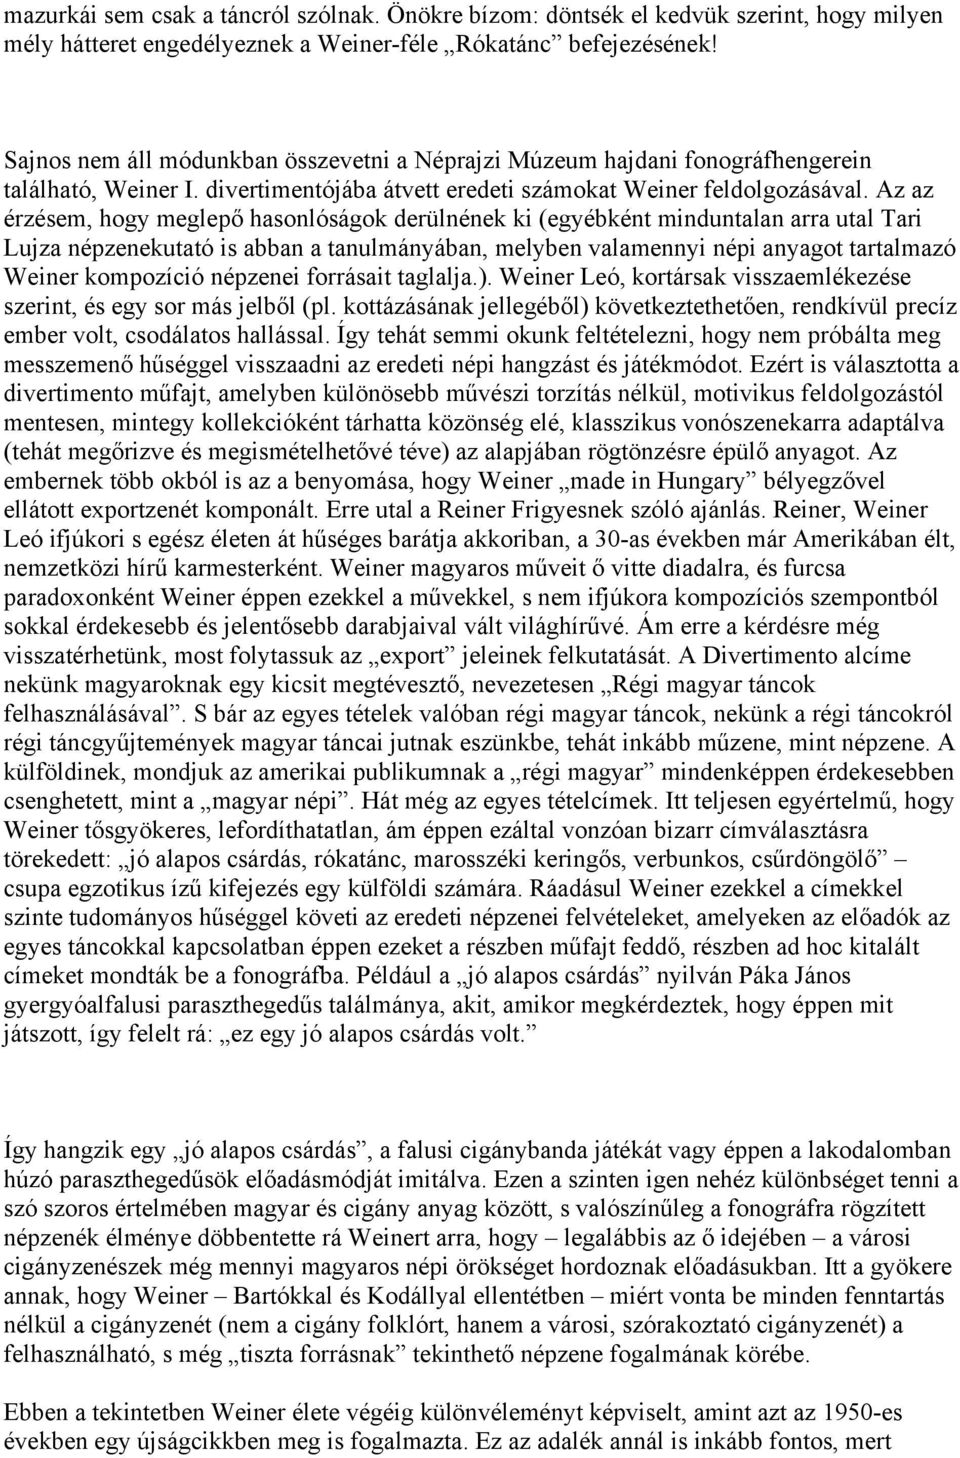 Weiner Leó: I. divertimento - PDF Ingyenes letöltés